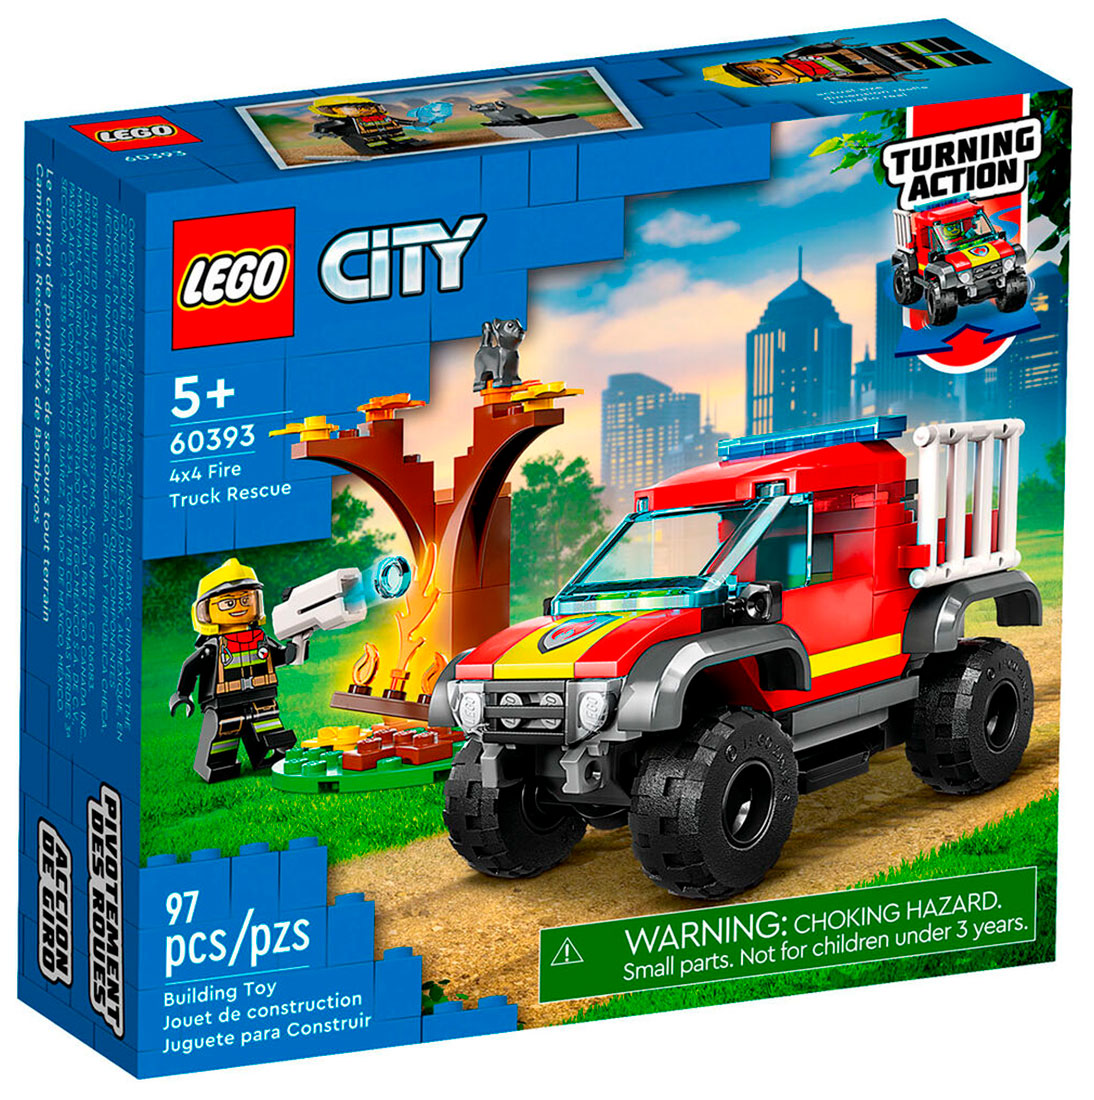 Конструктор Lego City Спасательный пожарный внедорожник (60393) игрушка конструктор спасательный внедорожник для зверей lego city wildlife 60301 4 157 элементов